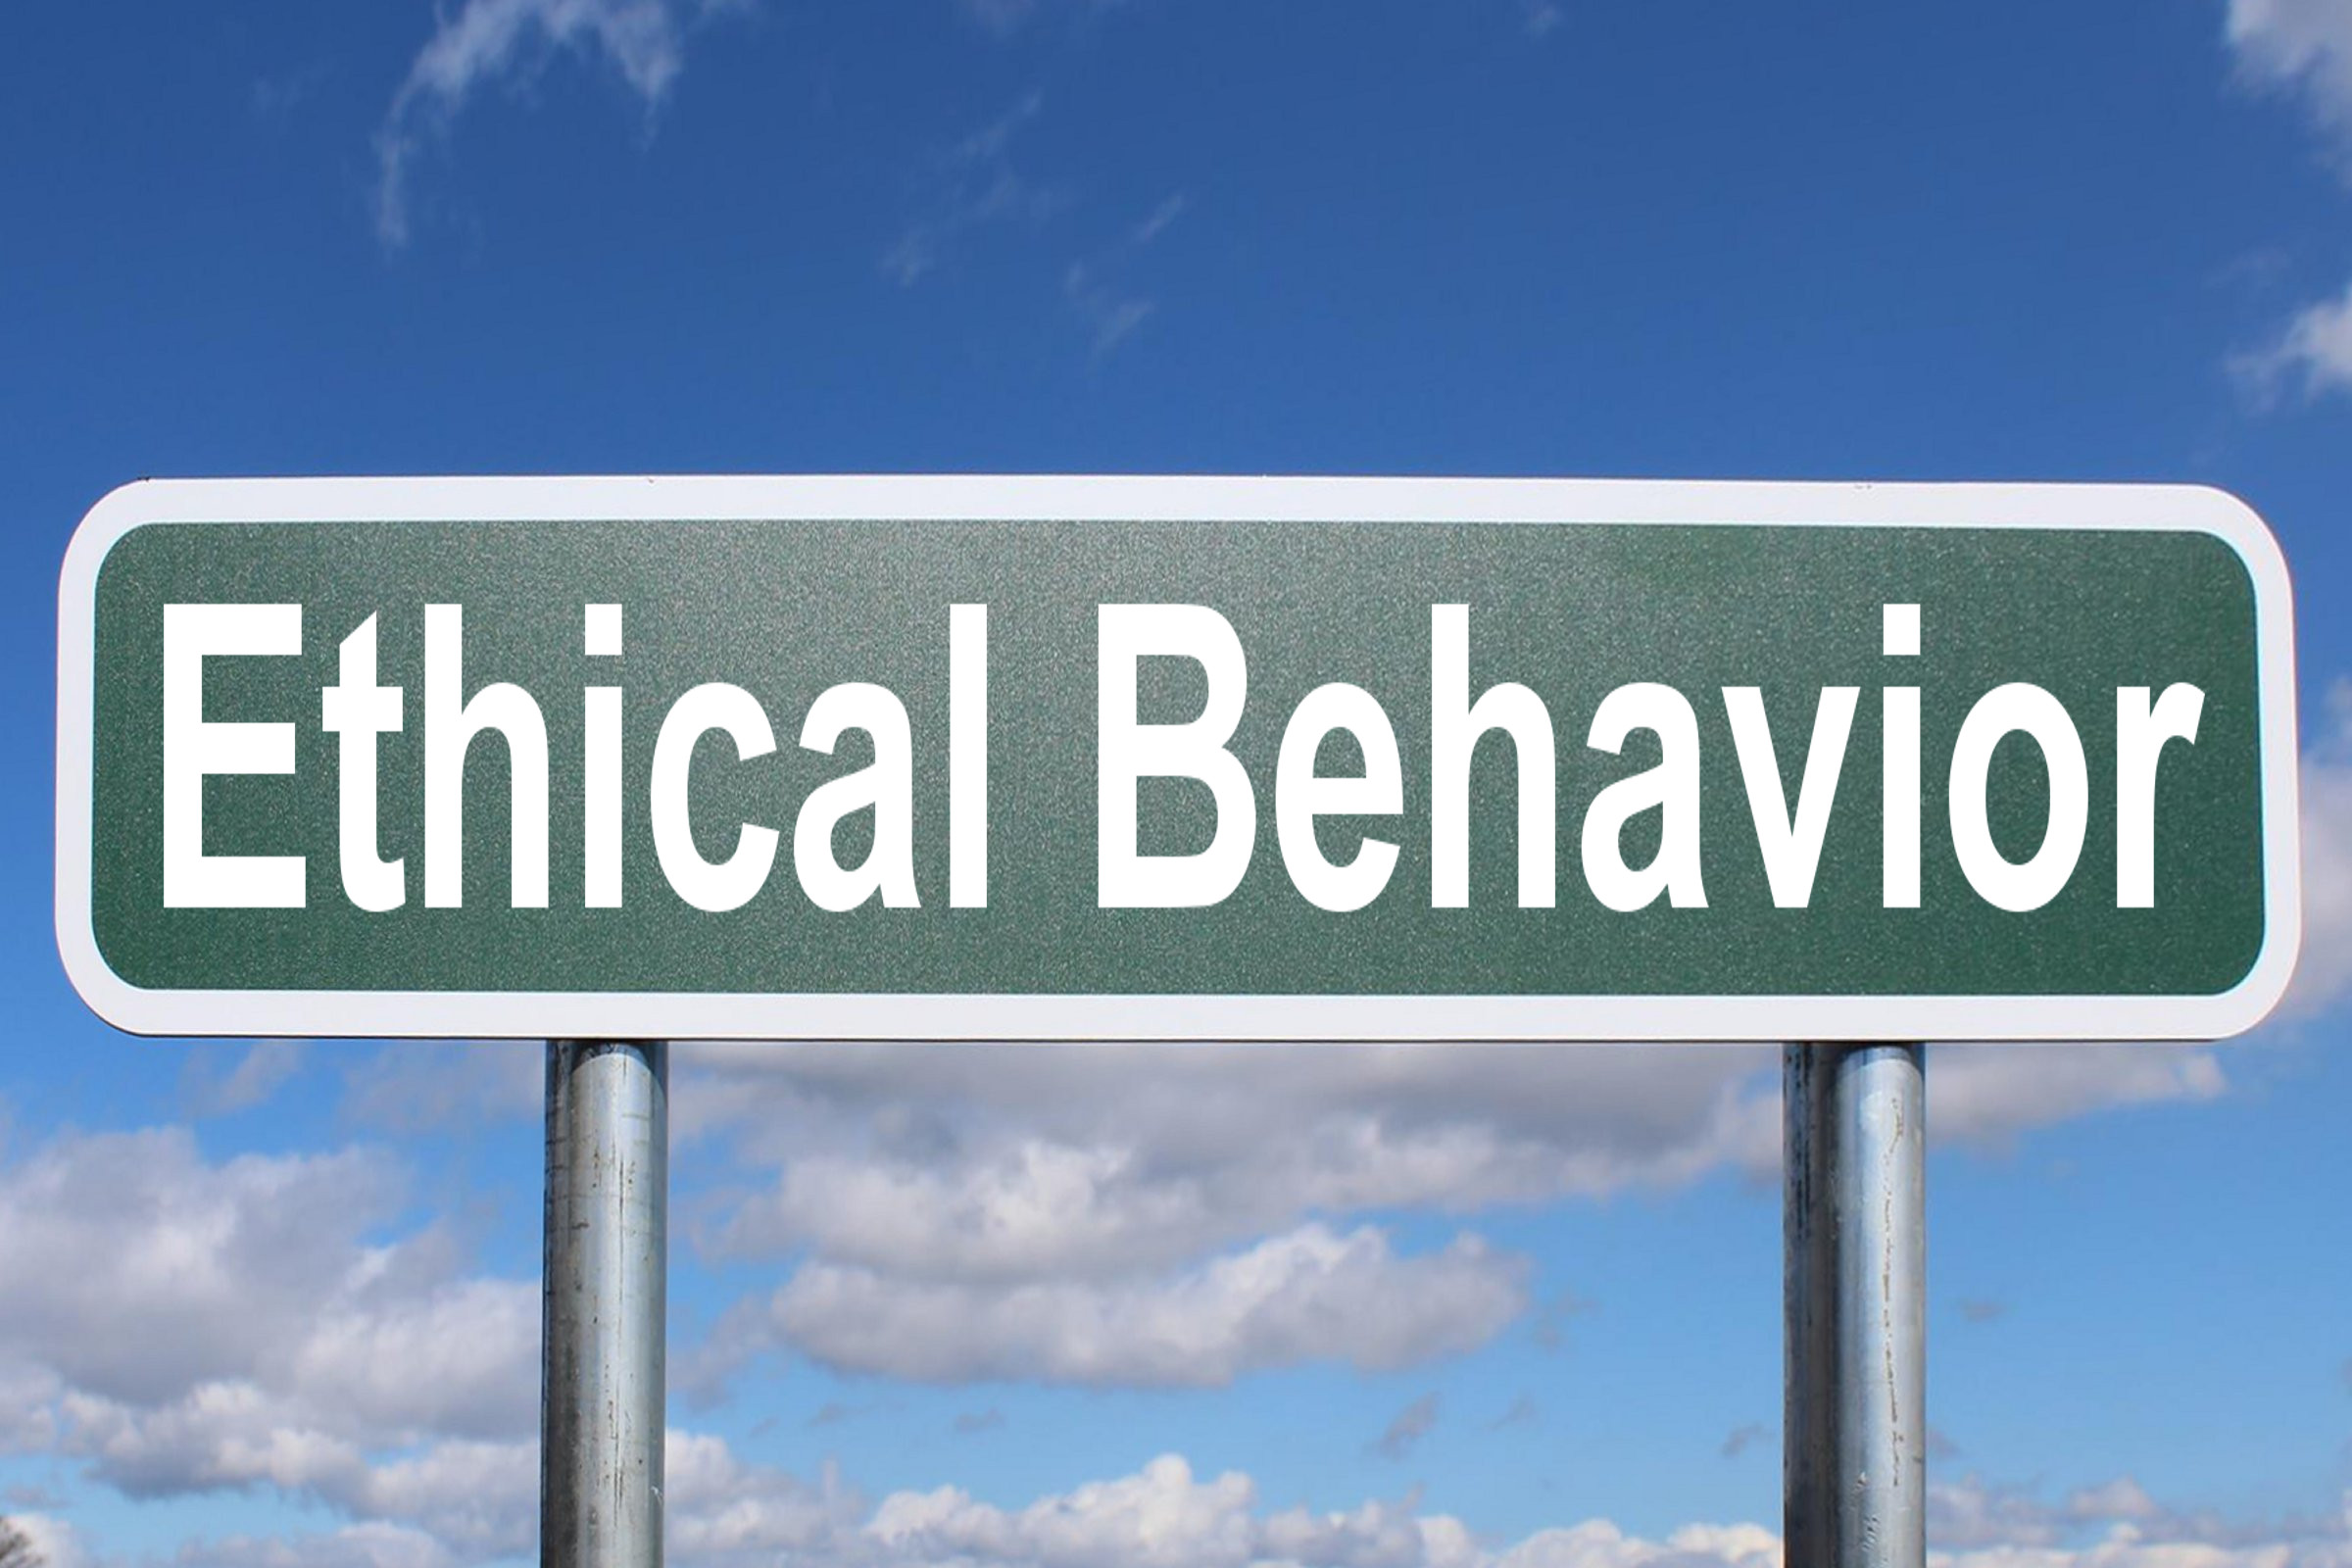 ethical behavior